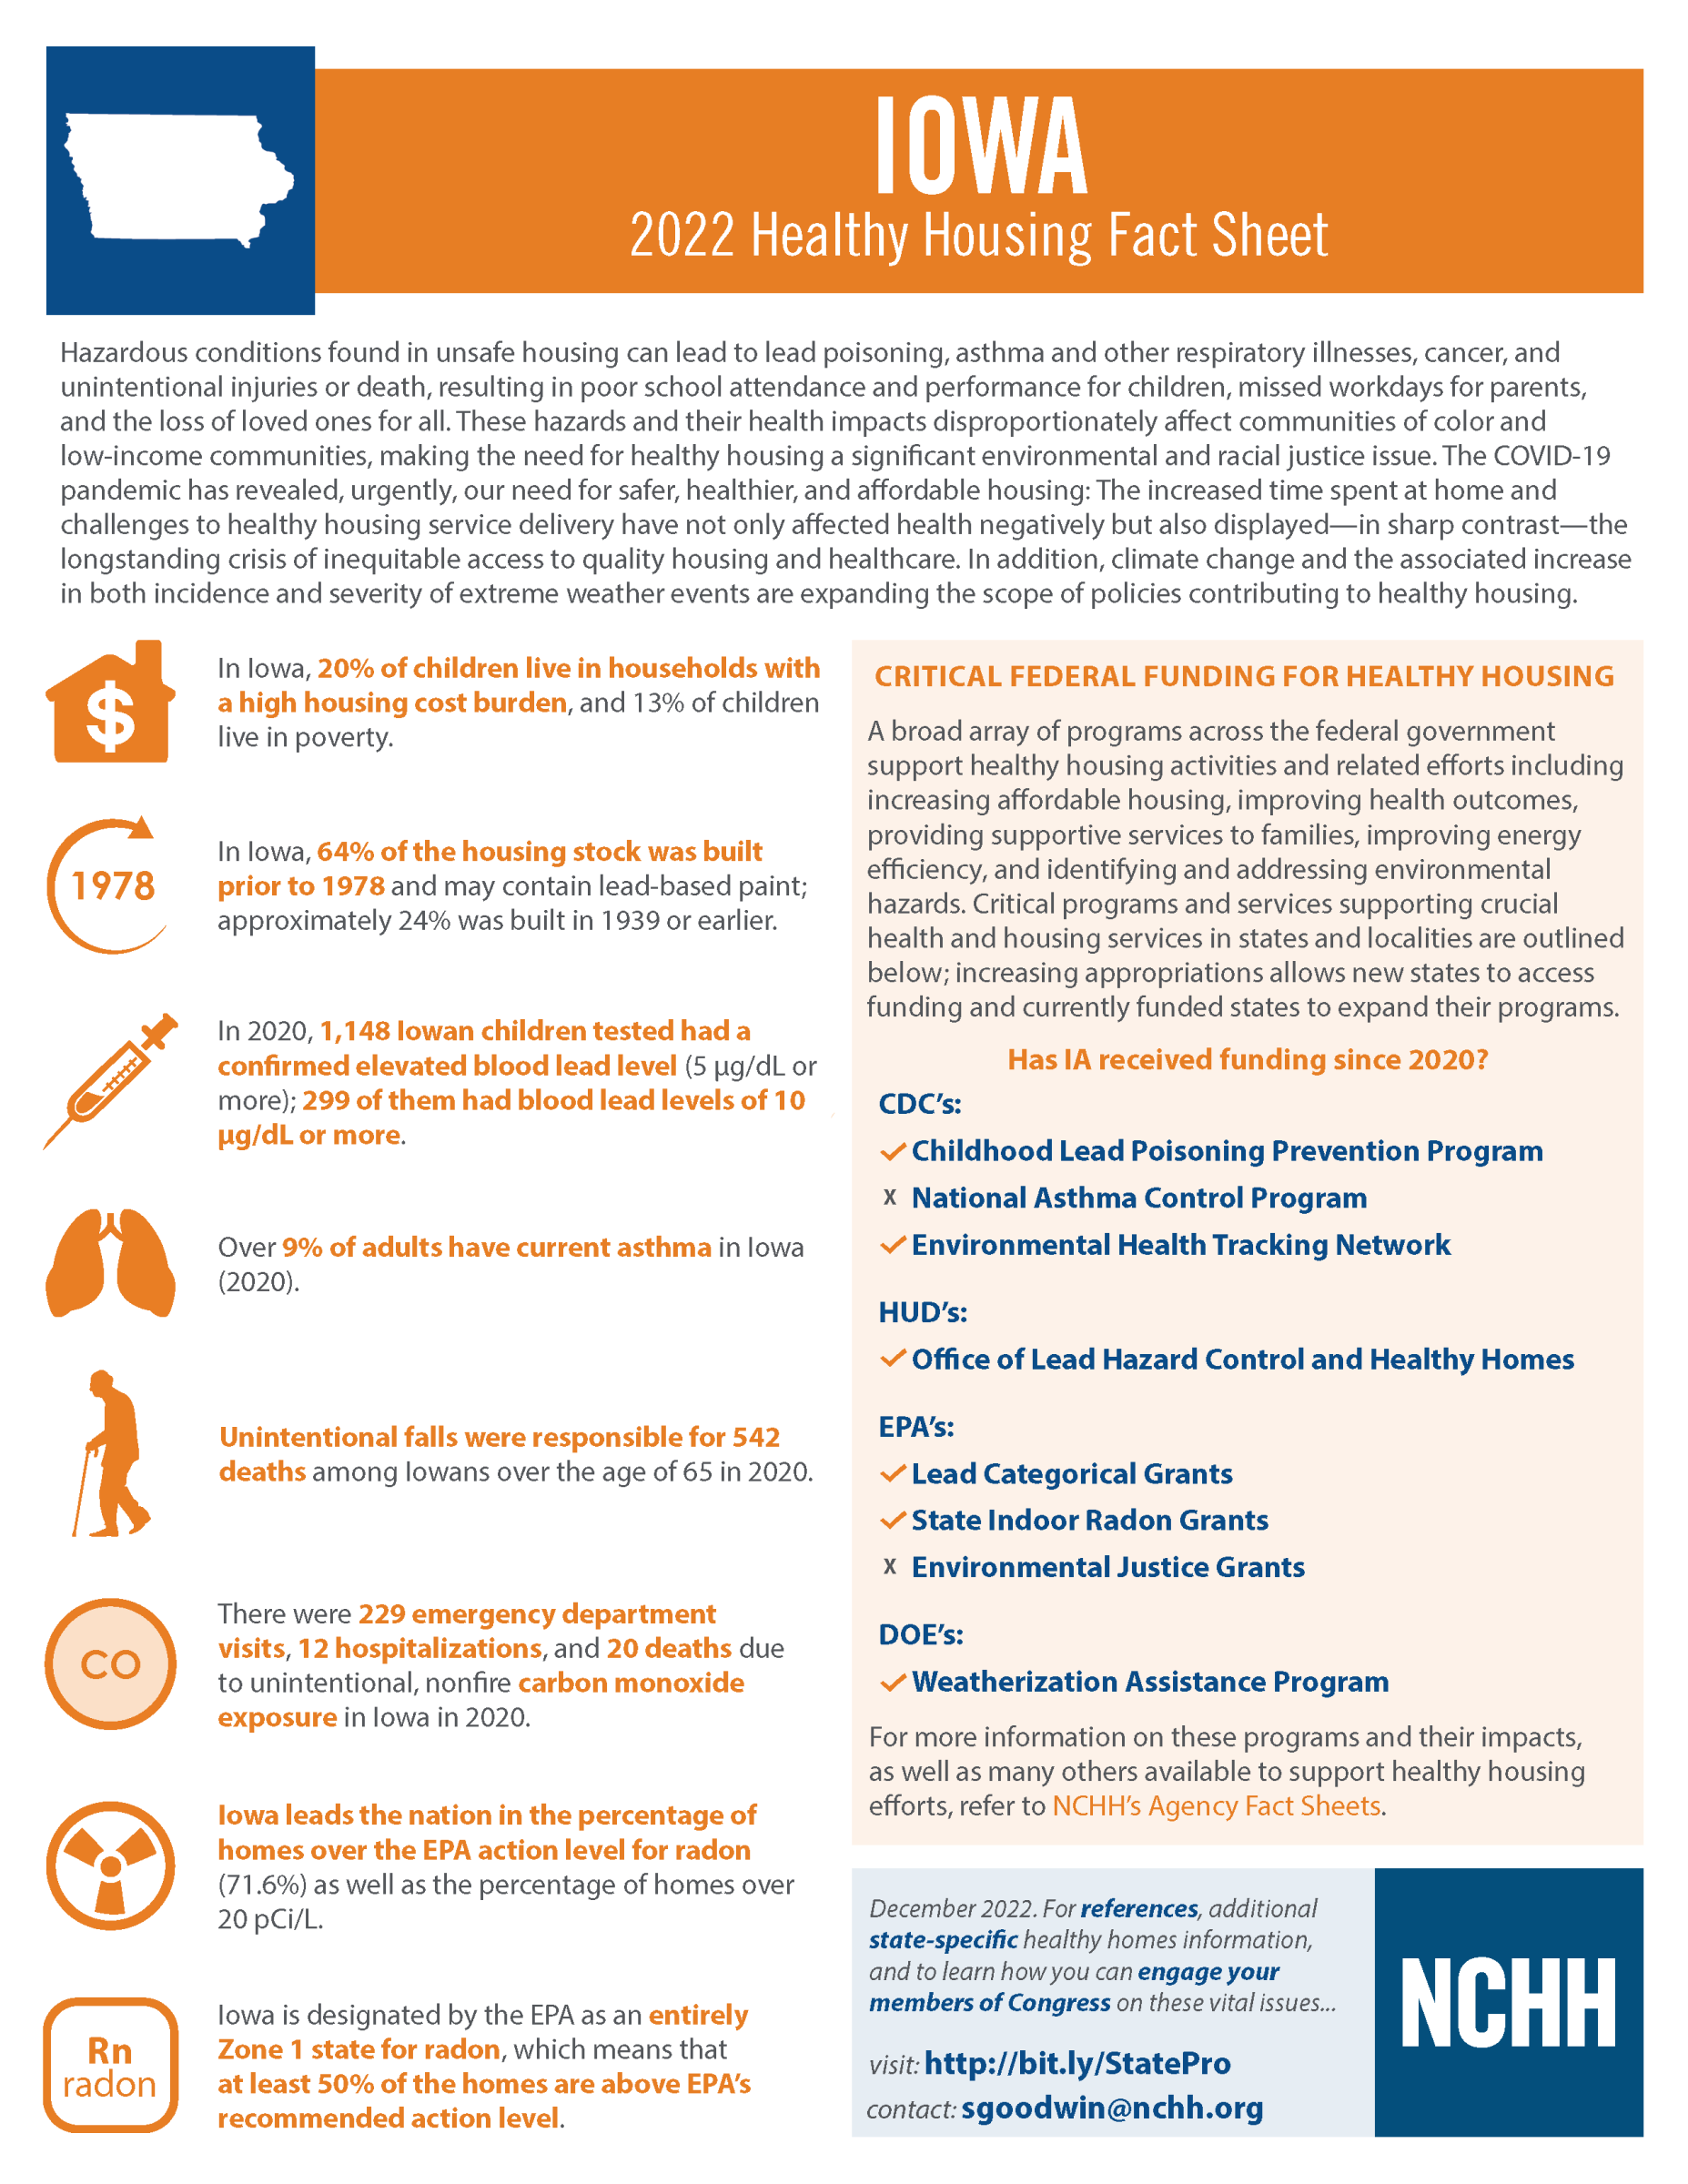 Healthy Housing Fact Sheet - Iowa 2022